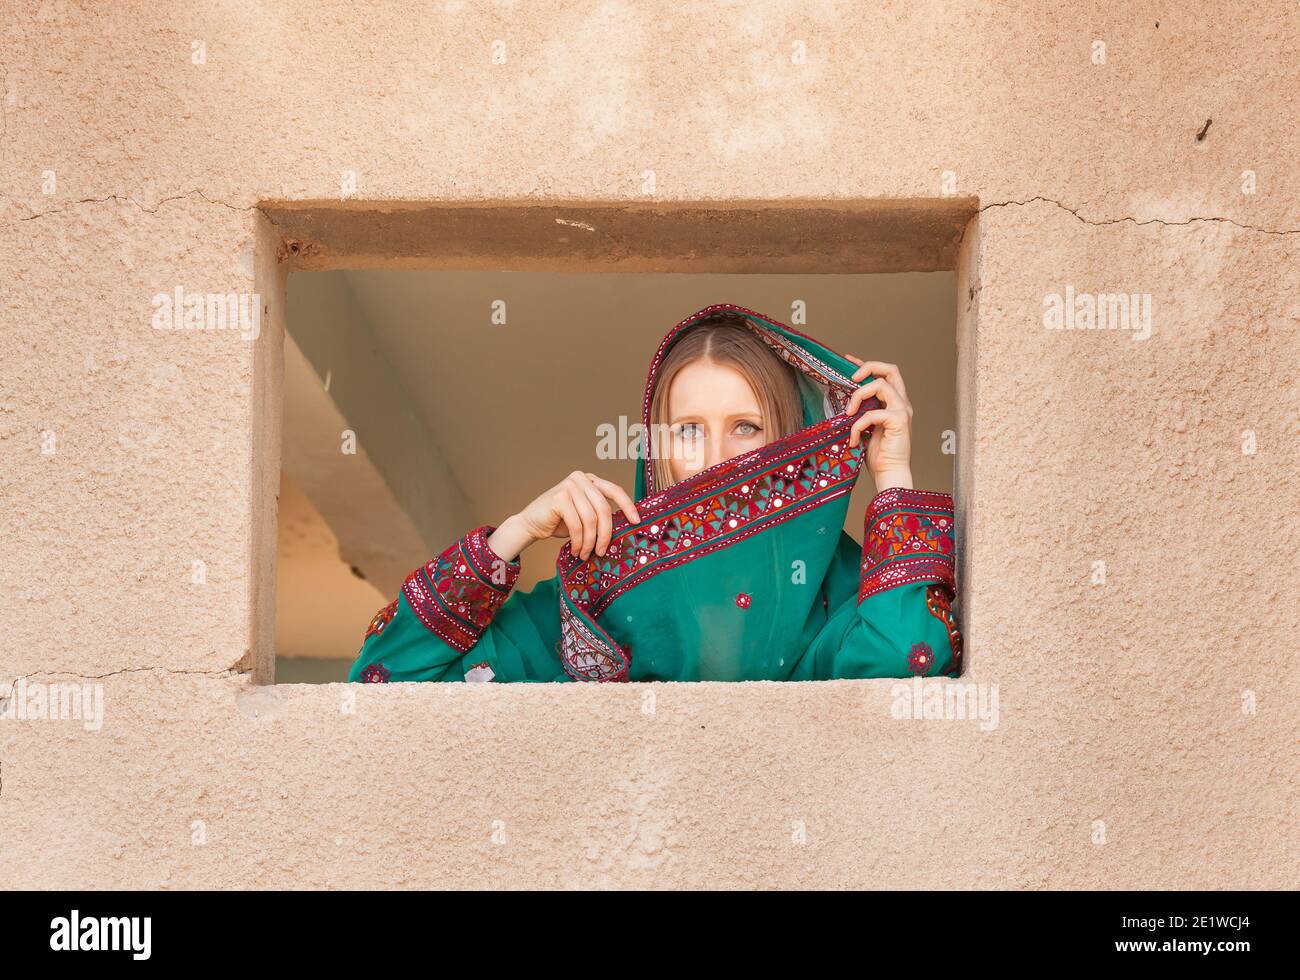 Wunderschöne schüchterne Mädchen in traditionellen omanischen Kleidung  suchen durch die Fenster und bedeckt ihr Gesicht mit Schleier vor zu  verstecken Augen von Menschen, die in der Nähe gehen Stockfotografie - Alamy